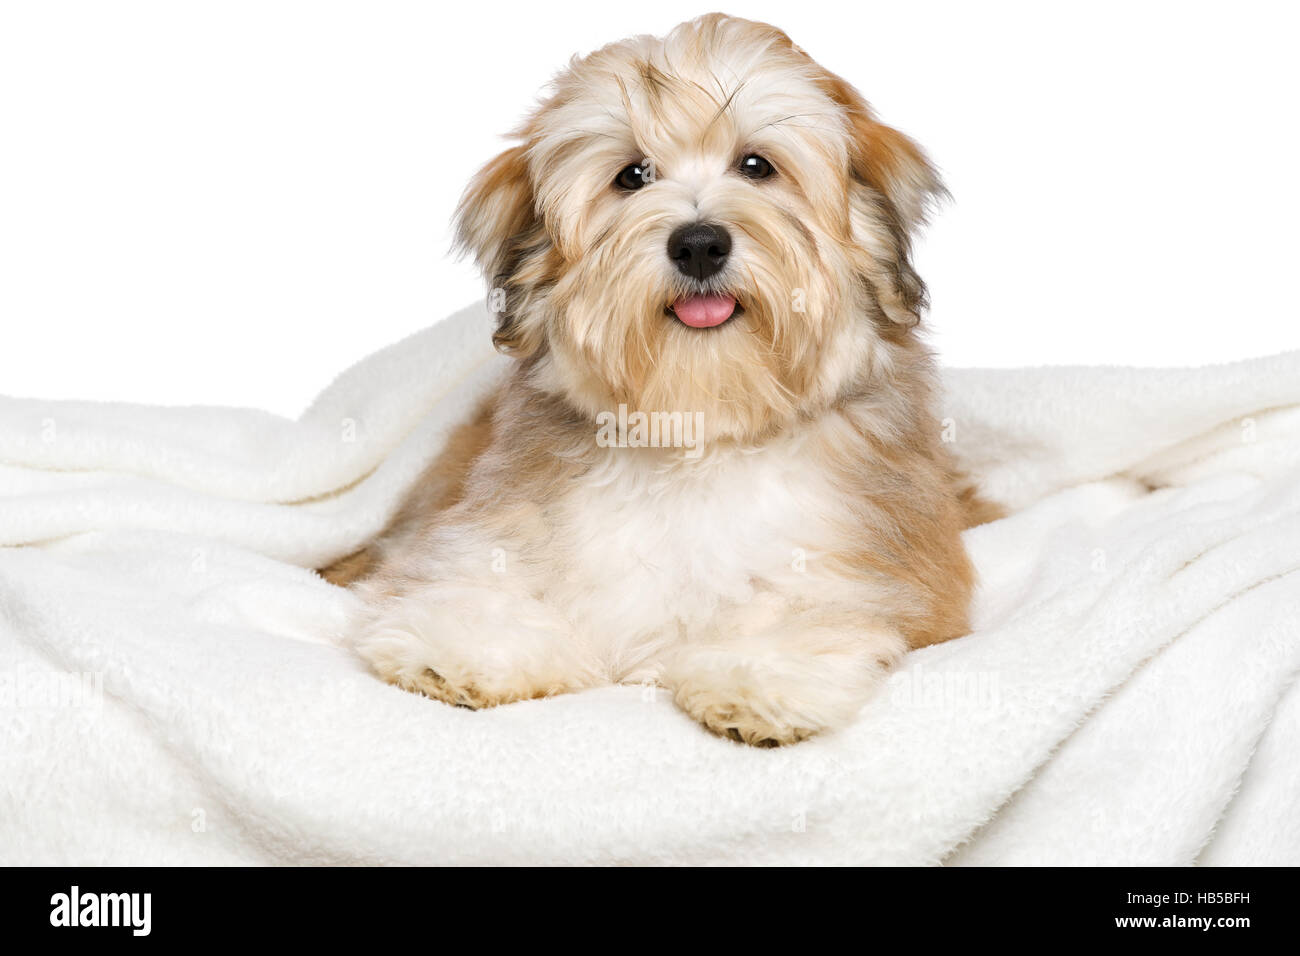 Bichon Havanais rouge heureux chiot chien est couché sur un couvre-lit blanc Banque D'Images